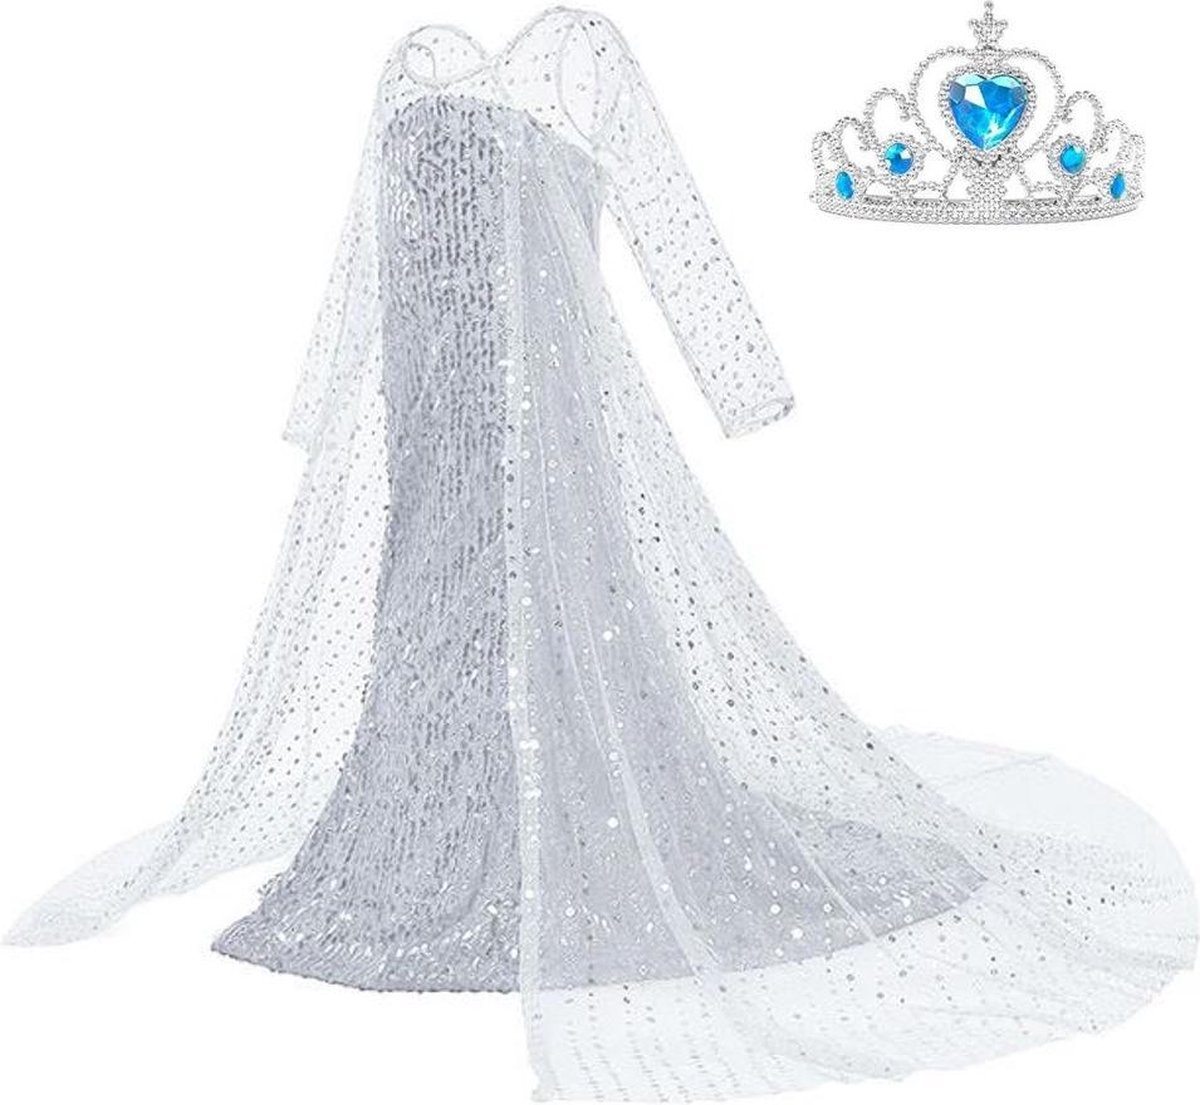 Frozen 2 Elsa jurk IJskoningin Deluxe met lange sleep 104-110 (110) + kroon Prinsessen jurk verkleedkleding